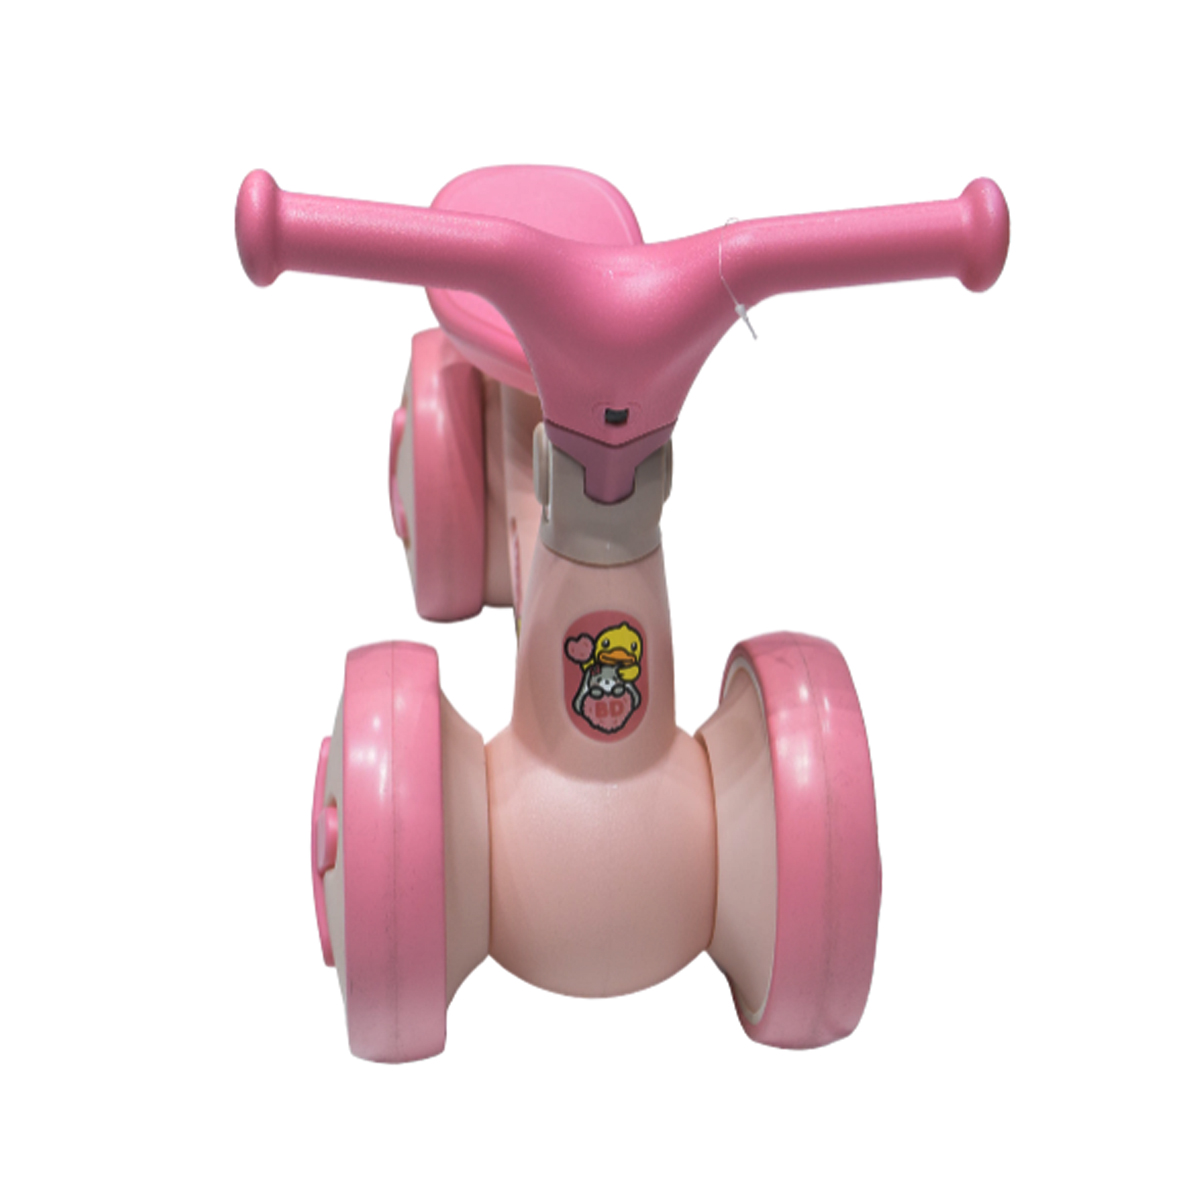 Bicicleta de Equilibrio Montable Infantil Rosa